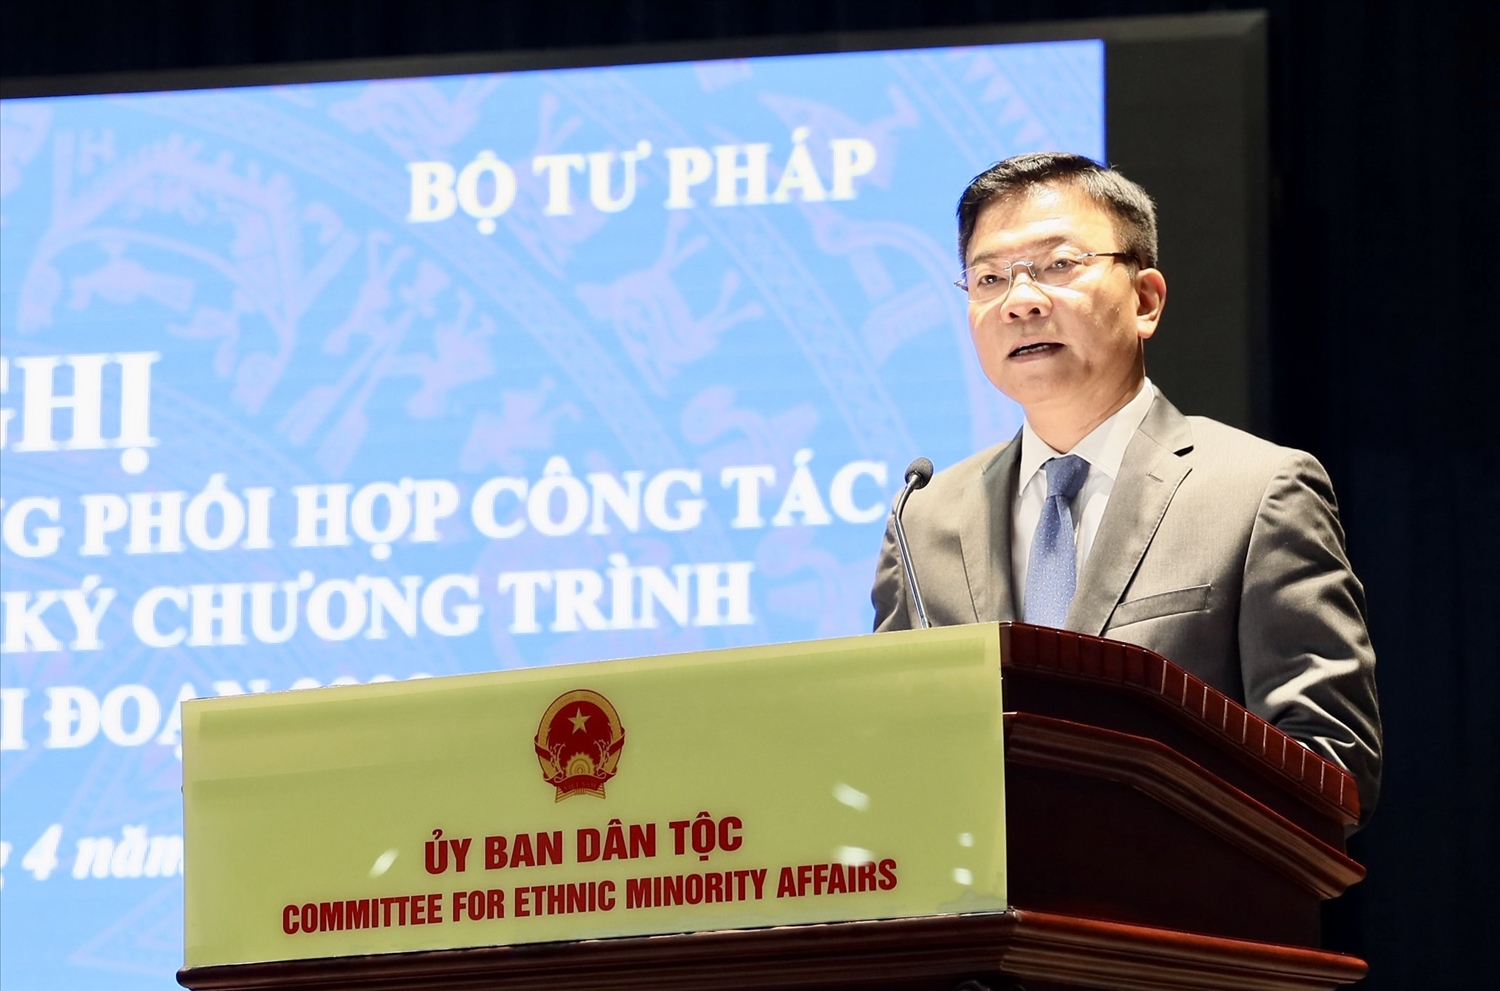 Bộ trưởng Bộ Tư pháp Lê Thành Long mong muốn hai cơ quan phối hợp thực hiện hiệu quả các nhiệm vụ được giao.